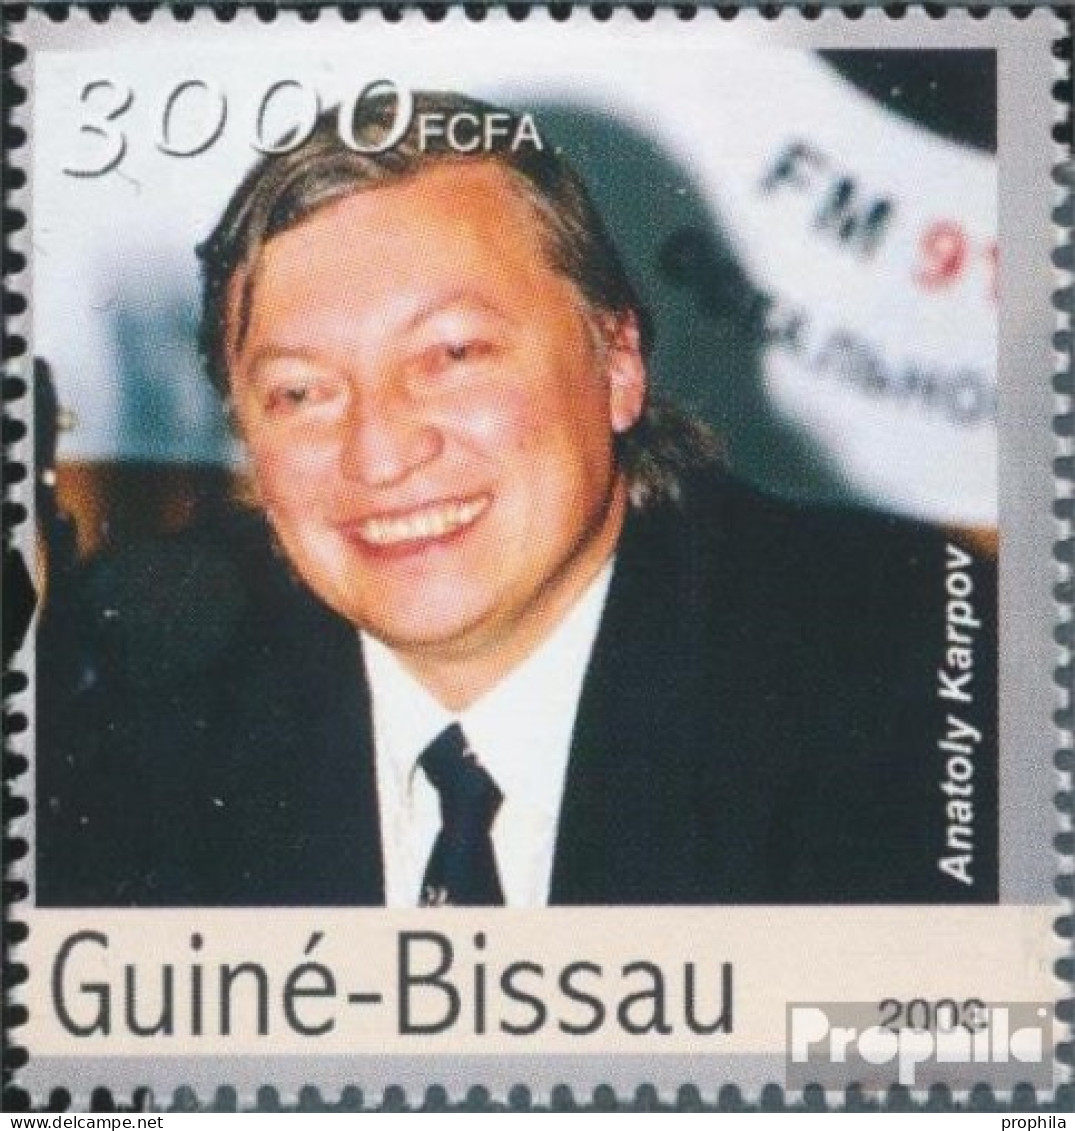 Guinea-Bissau 2238 (kompl. Ausgabe) Postfrisch 2003 Schachspieler - Guinea-Bissau